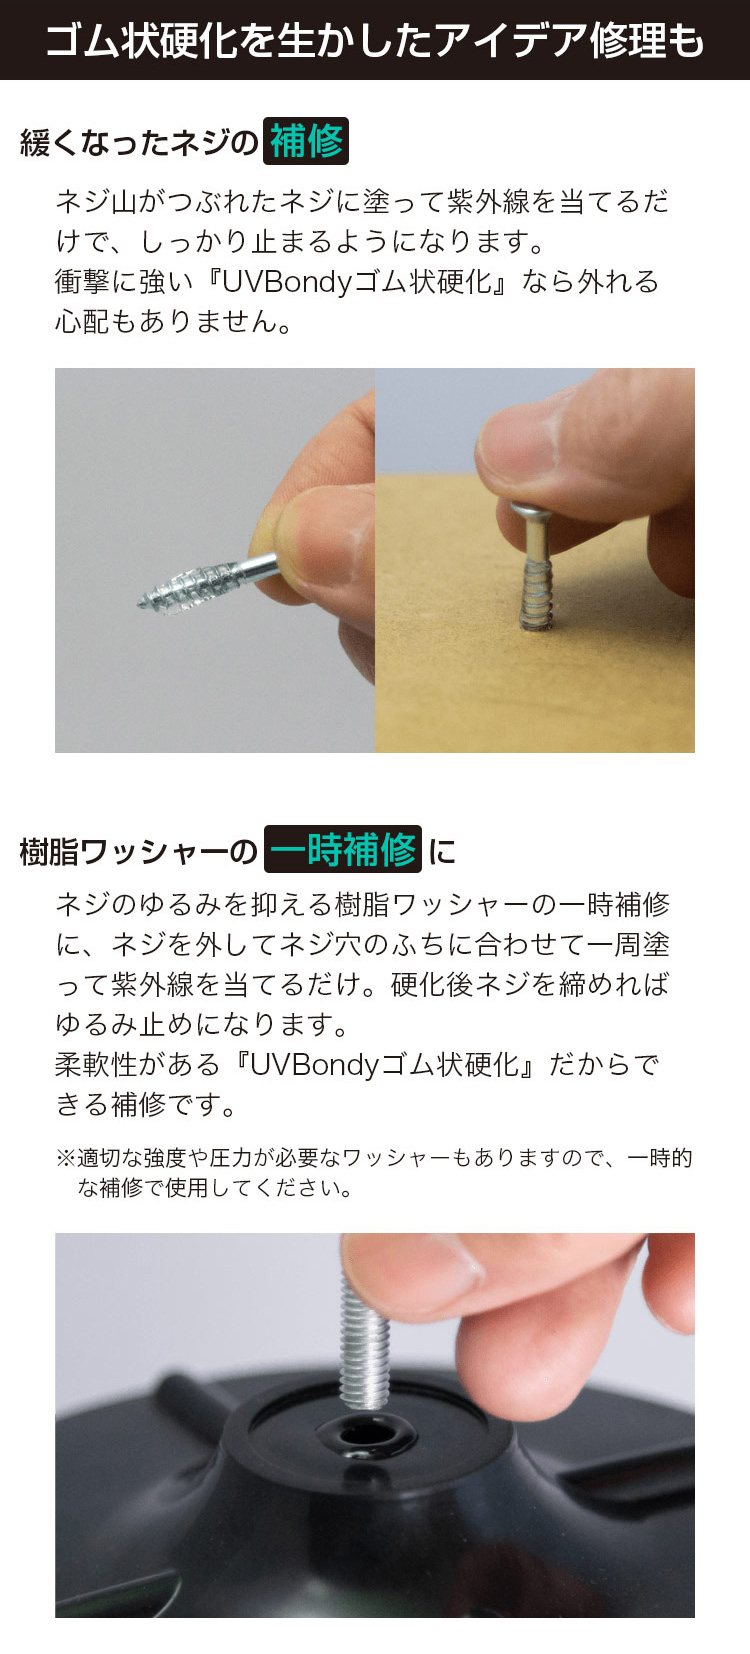 日本製 UV Bondy(ユーブイ ボンディ) ゴム状硬化 スターターキット ほぼすべてのものを接着、固定、塞ぐことが可能!液体プラスチック 接着剤  溶接機 LED(UV)紫外線ライト | プリンタインクのジットストア